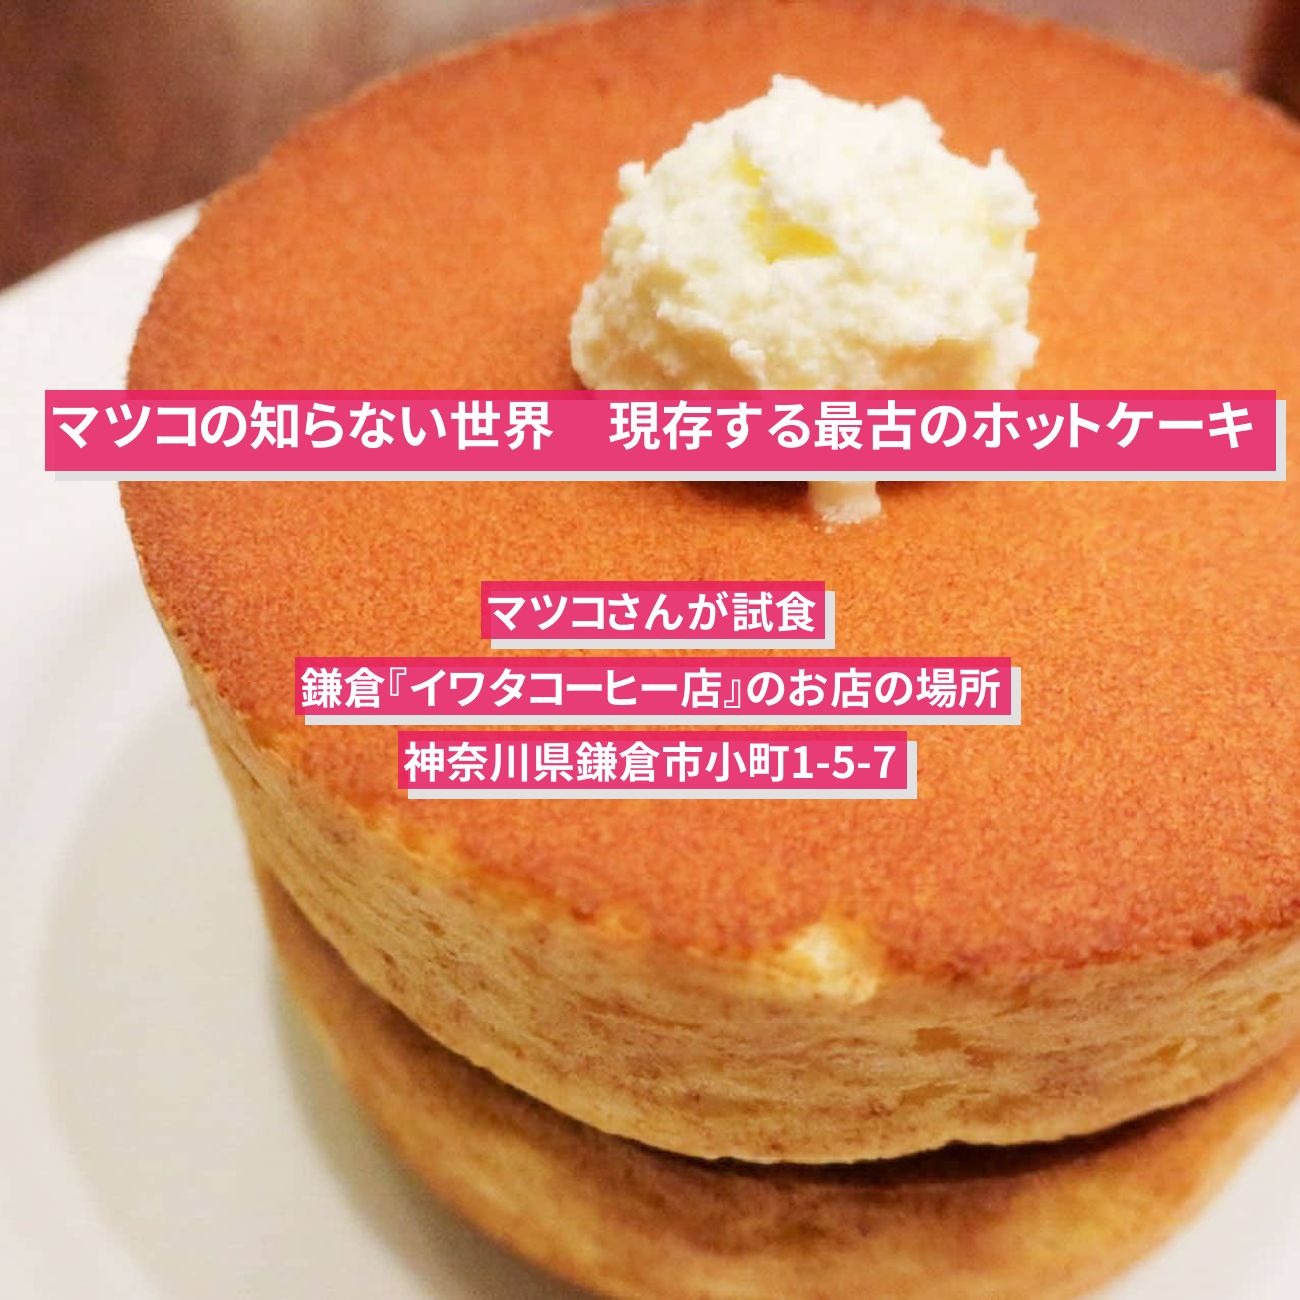 【マツコの知らない世界】現存する最古のホットケーキ『イワタコーヒー店』鎌倉のお店の場所